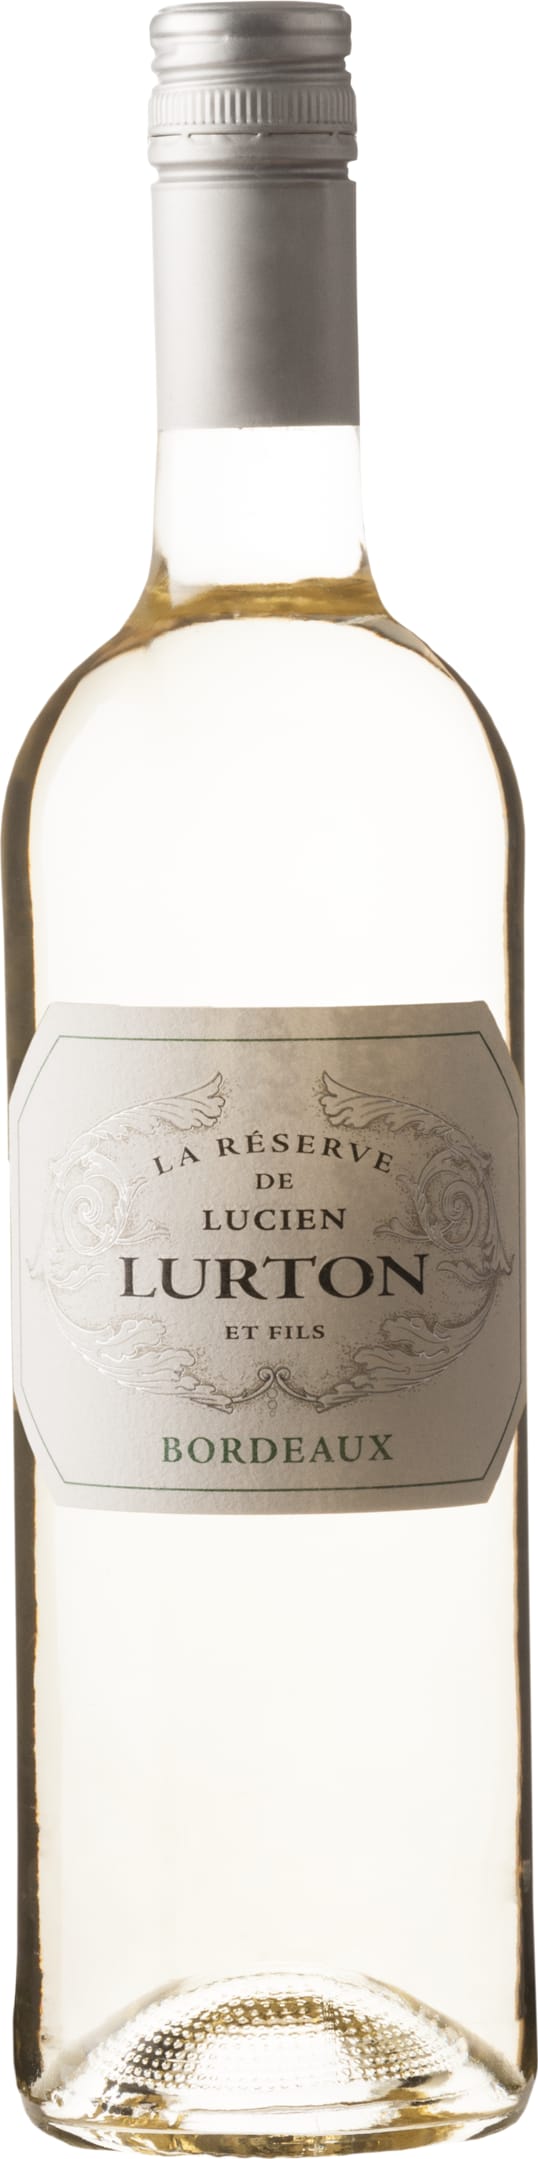 Lucien Lurton Collection Bordeaux Blanc La Reserve 2022 75cl - Buy Lucien Lurton Collection Wines from GREAT WINES DIRECT wine shop